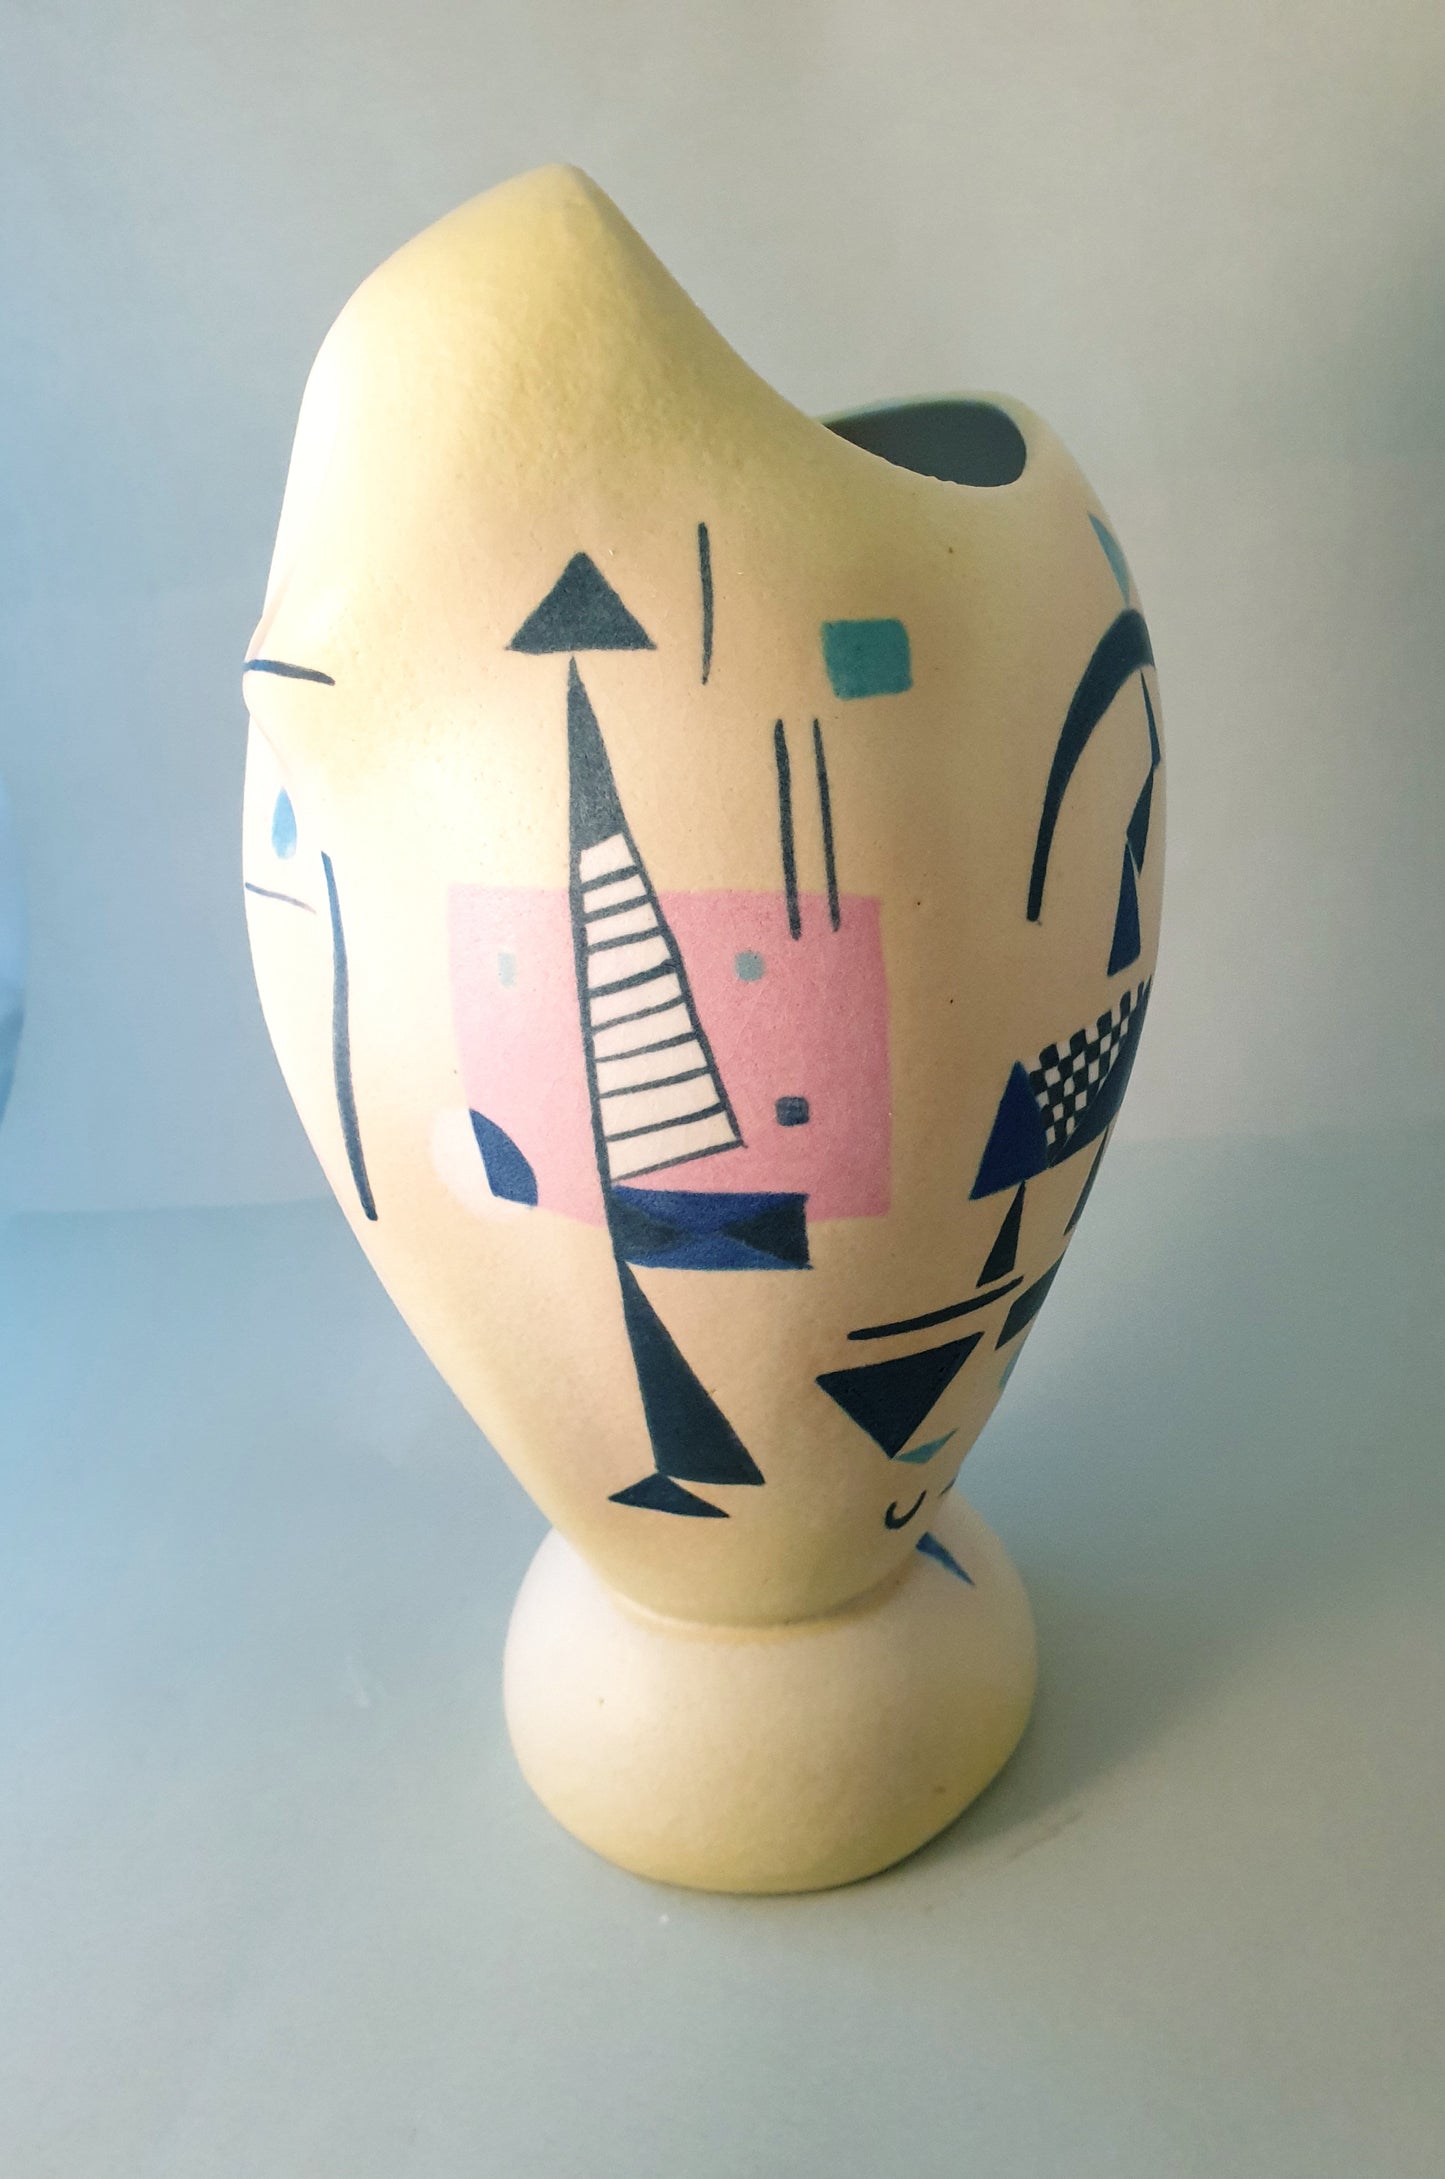 Kandinsky series "Penguin" yellow vase